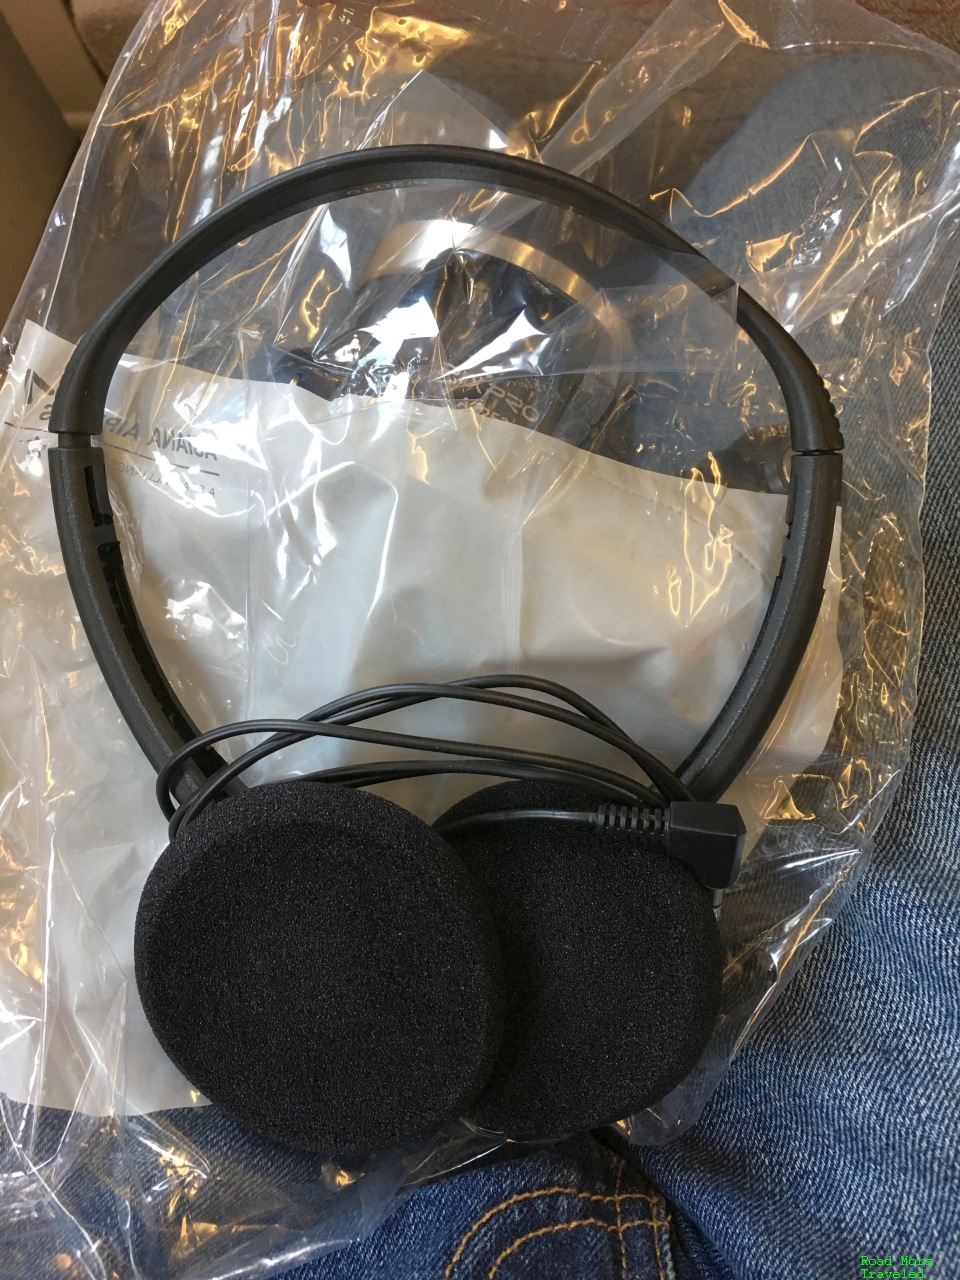 OZ Economy headphones